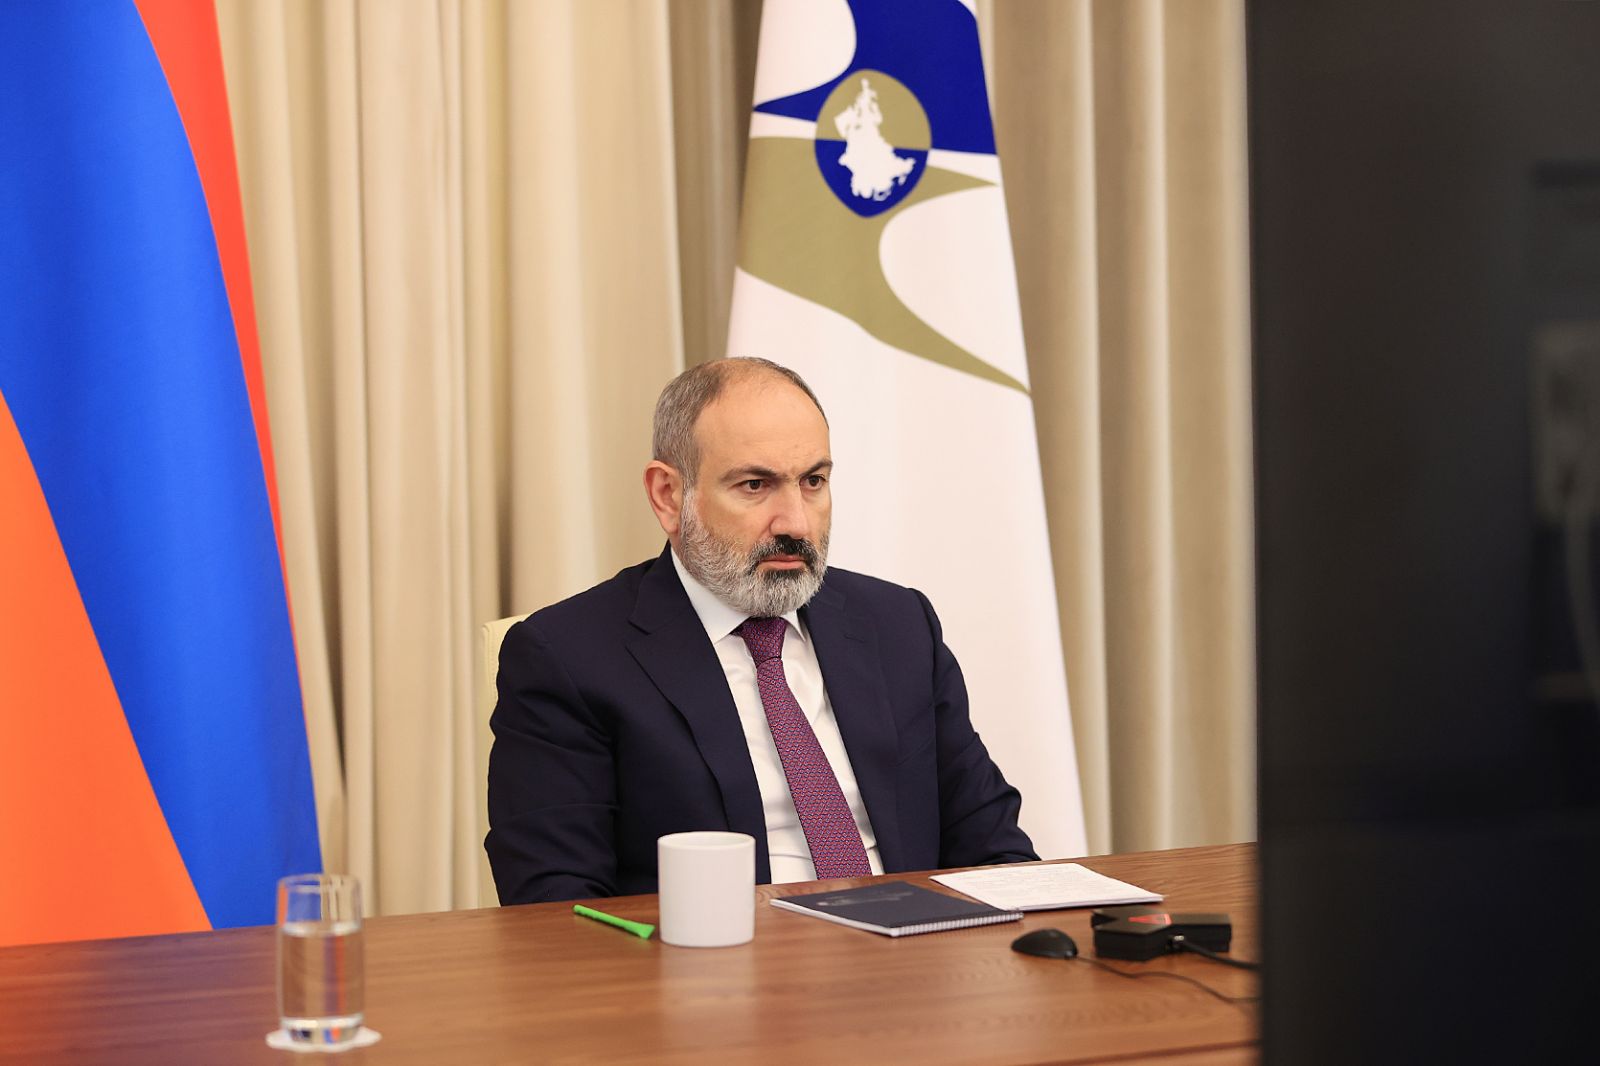 Новые технологии – это возможность осуществления прорыва в экономике, и эта сфера имеет стратегическое значение для Армении: премьер-министр